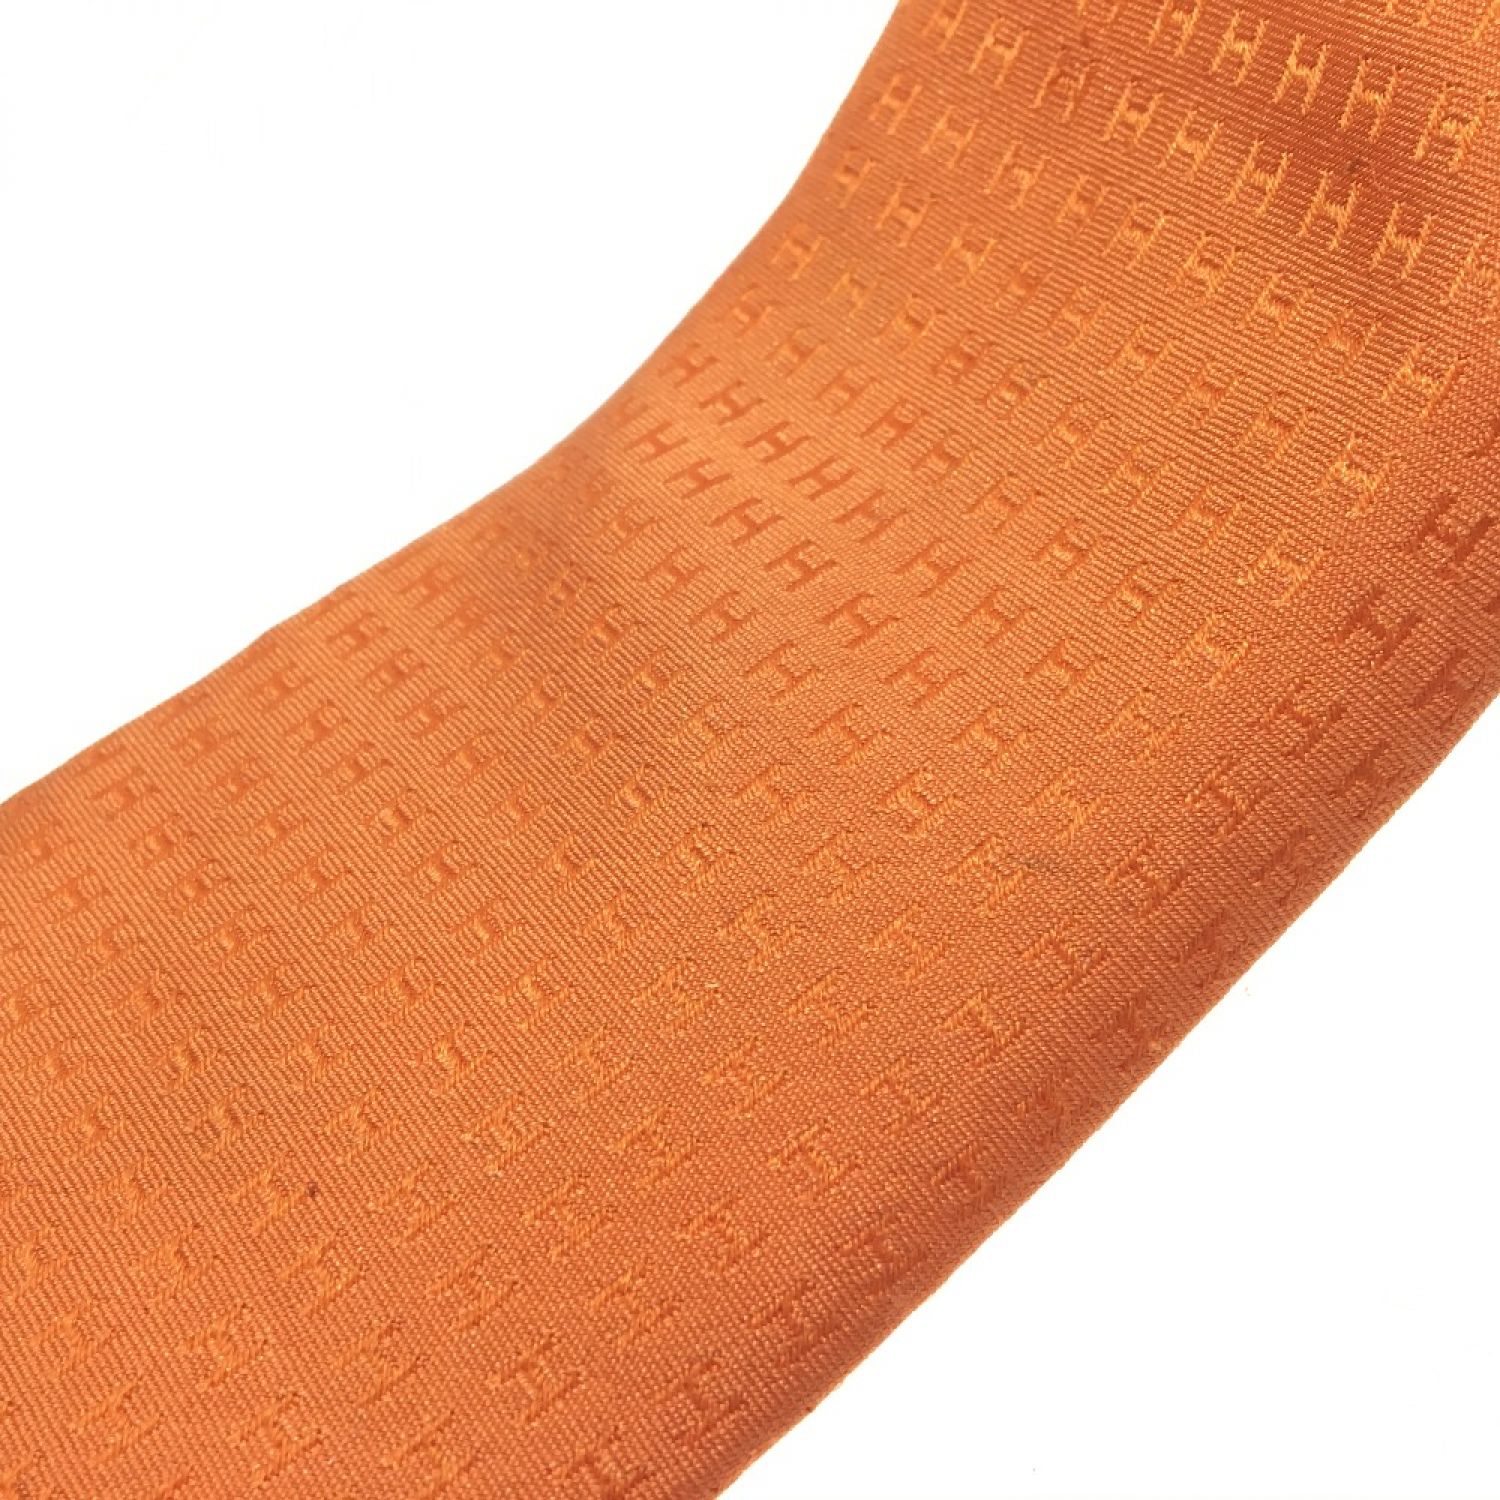 新品 エルメス ネクタイ オレンジ 袋付き Hermes 正規品 本物 みかん色